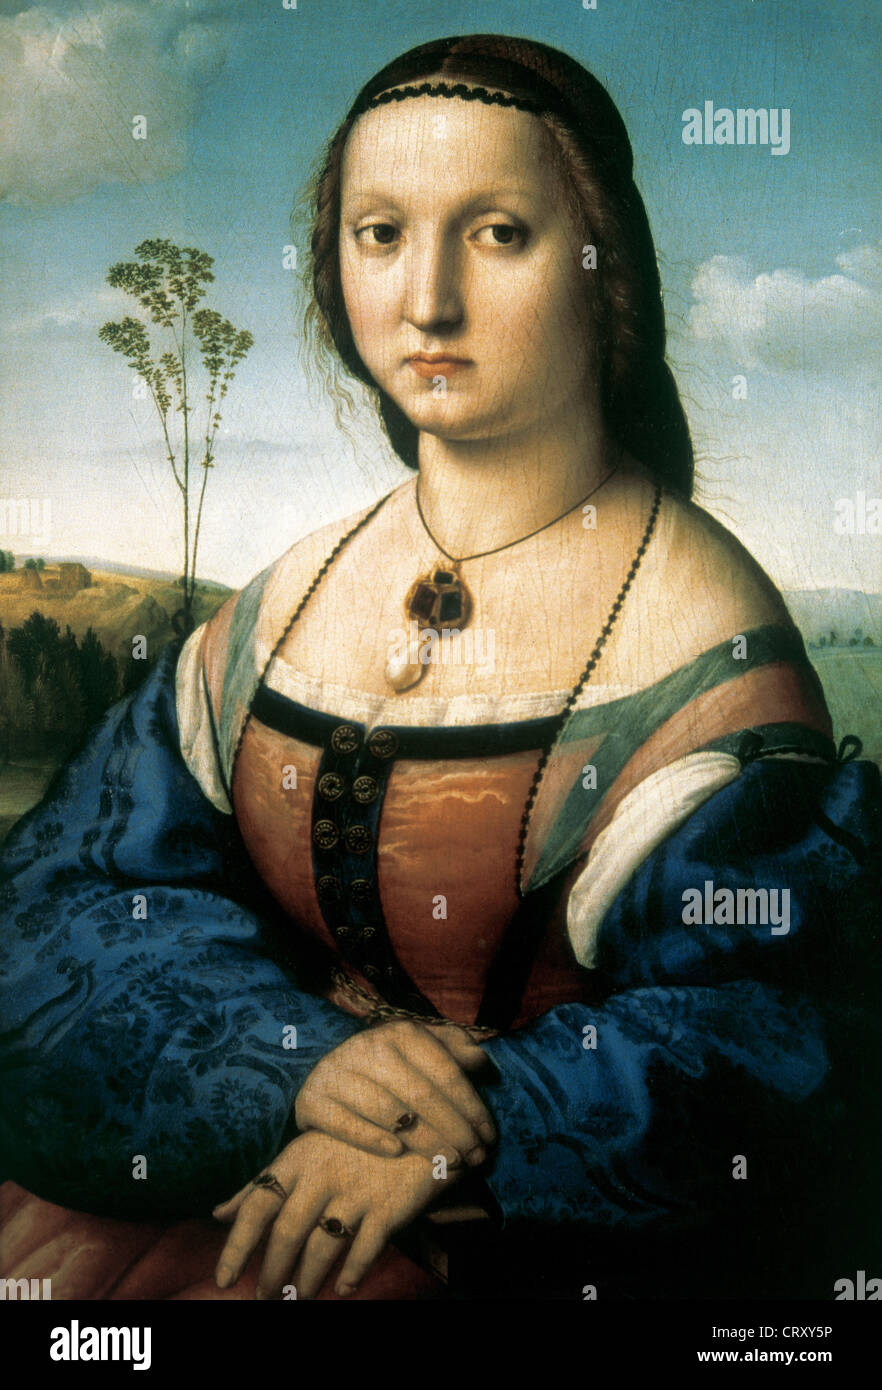 Raphael (1483-1520). Peintre italien. Portrait de Maddalena Doni. Huile sur bois, 1506-1507. Palais Pitti. Florence. L'Italie. Banque D'Images